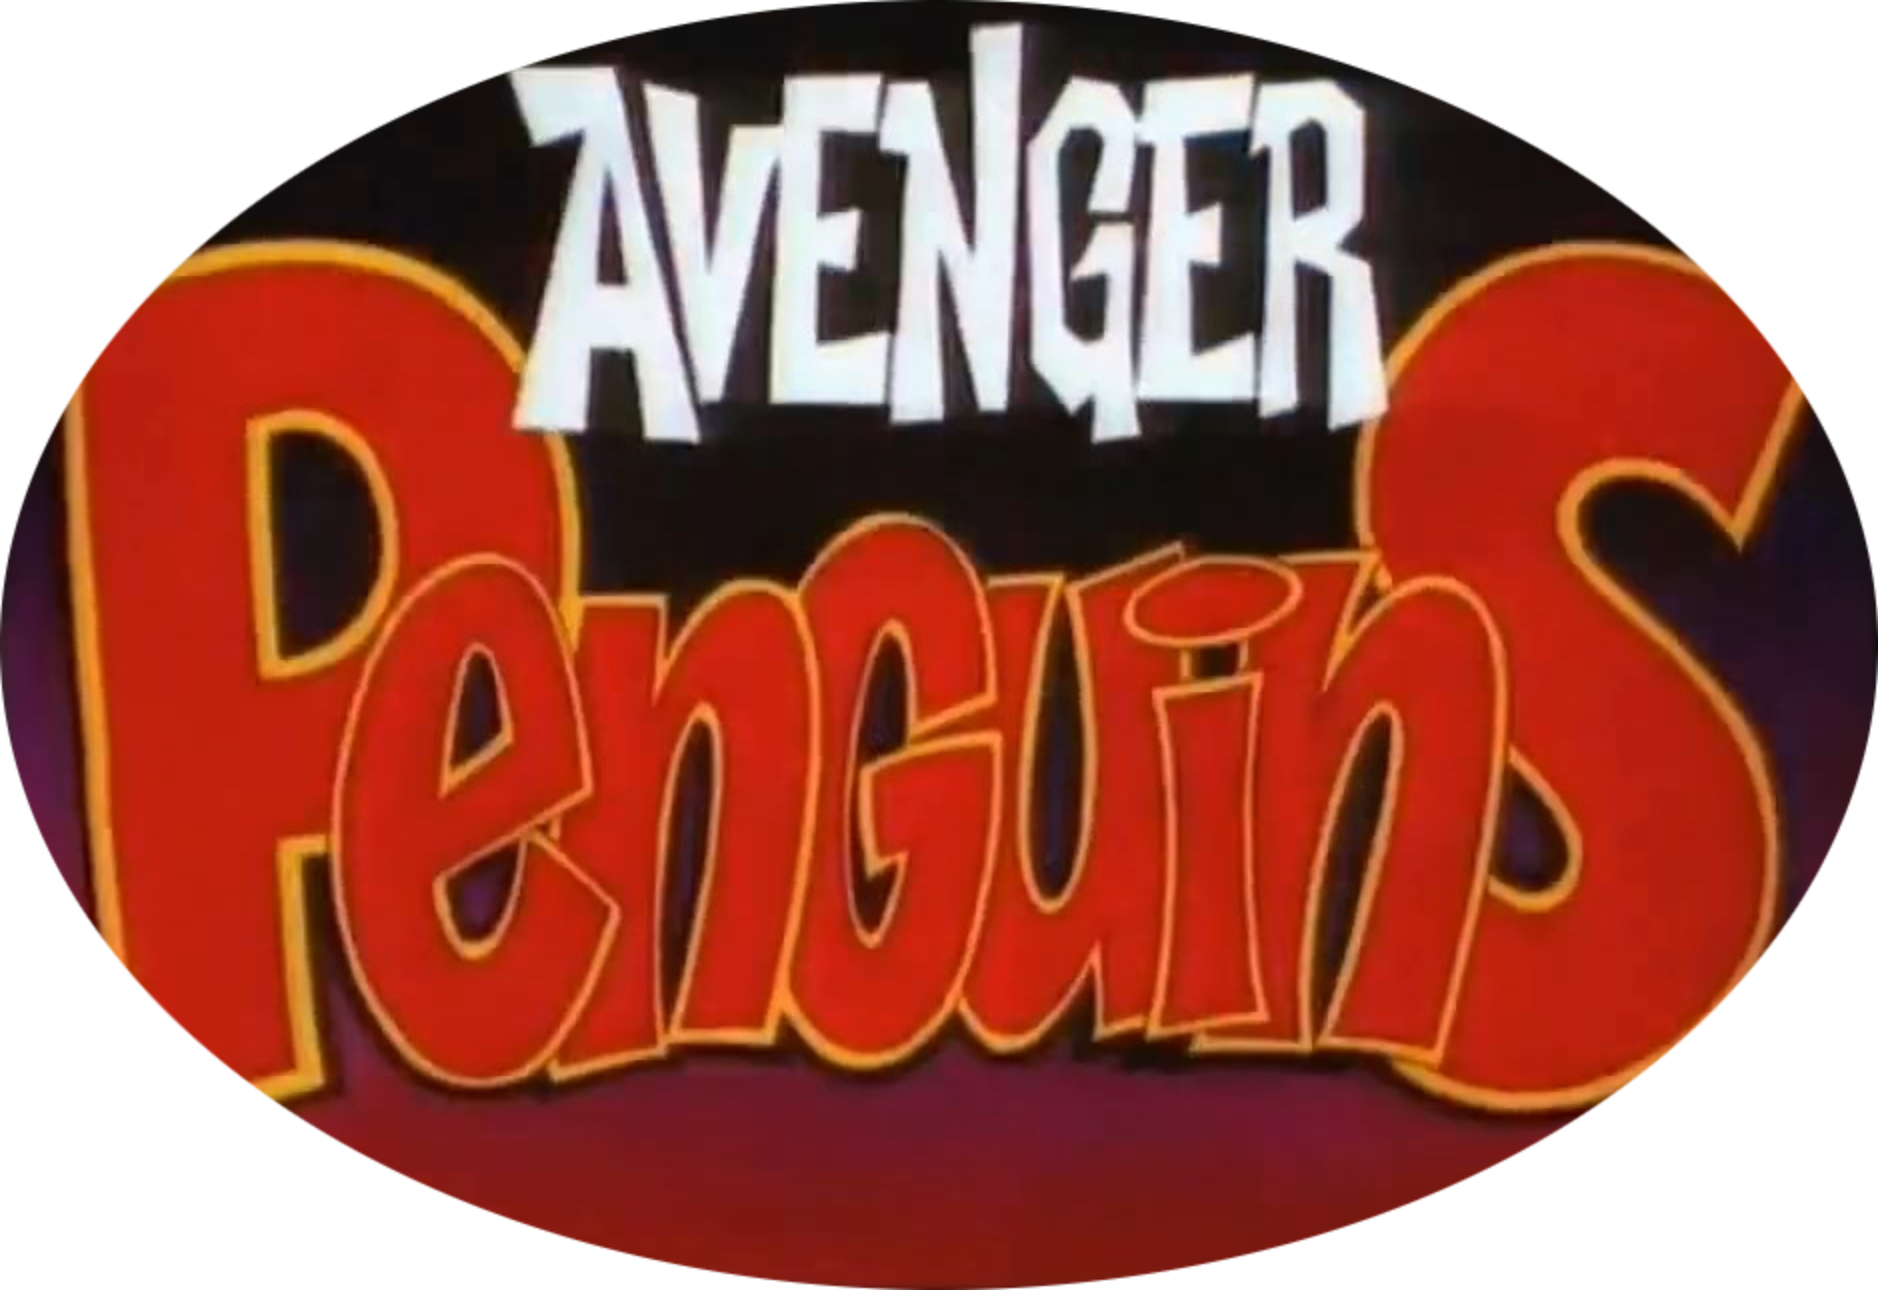 Avenger Penguins (3 DVDs Box Set)